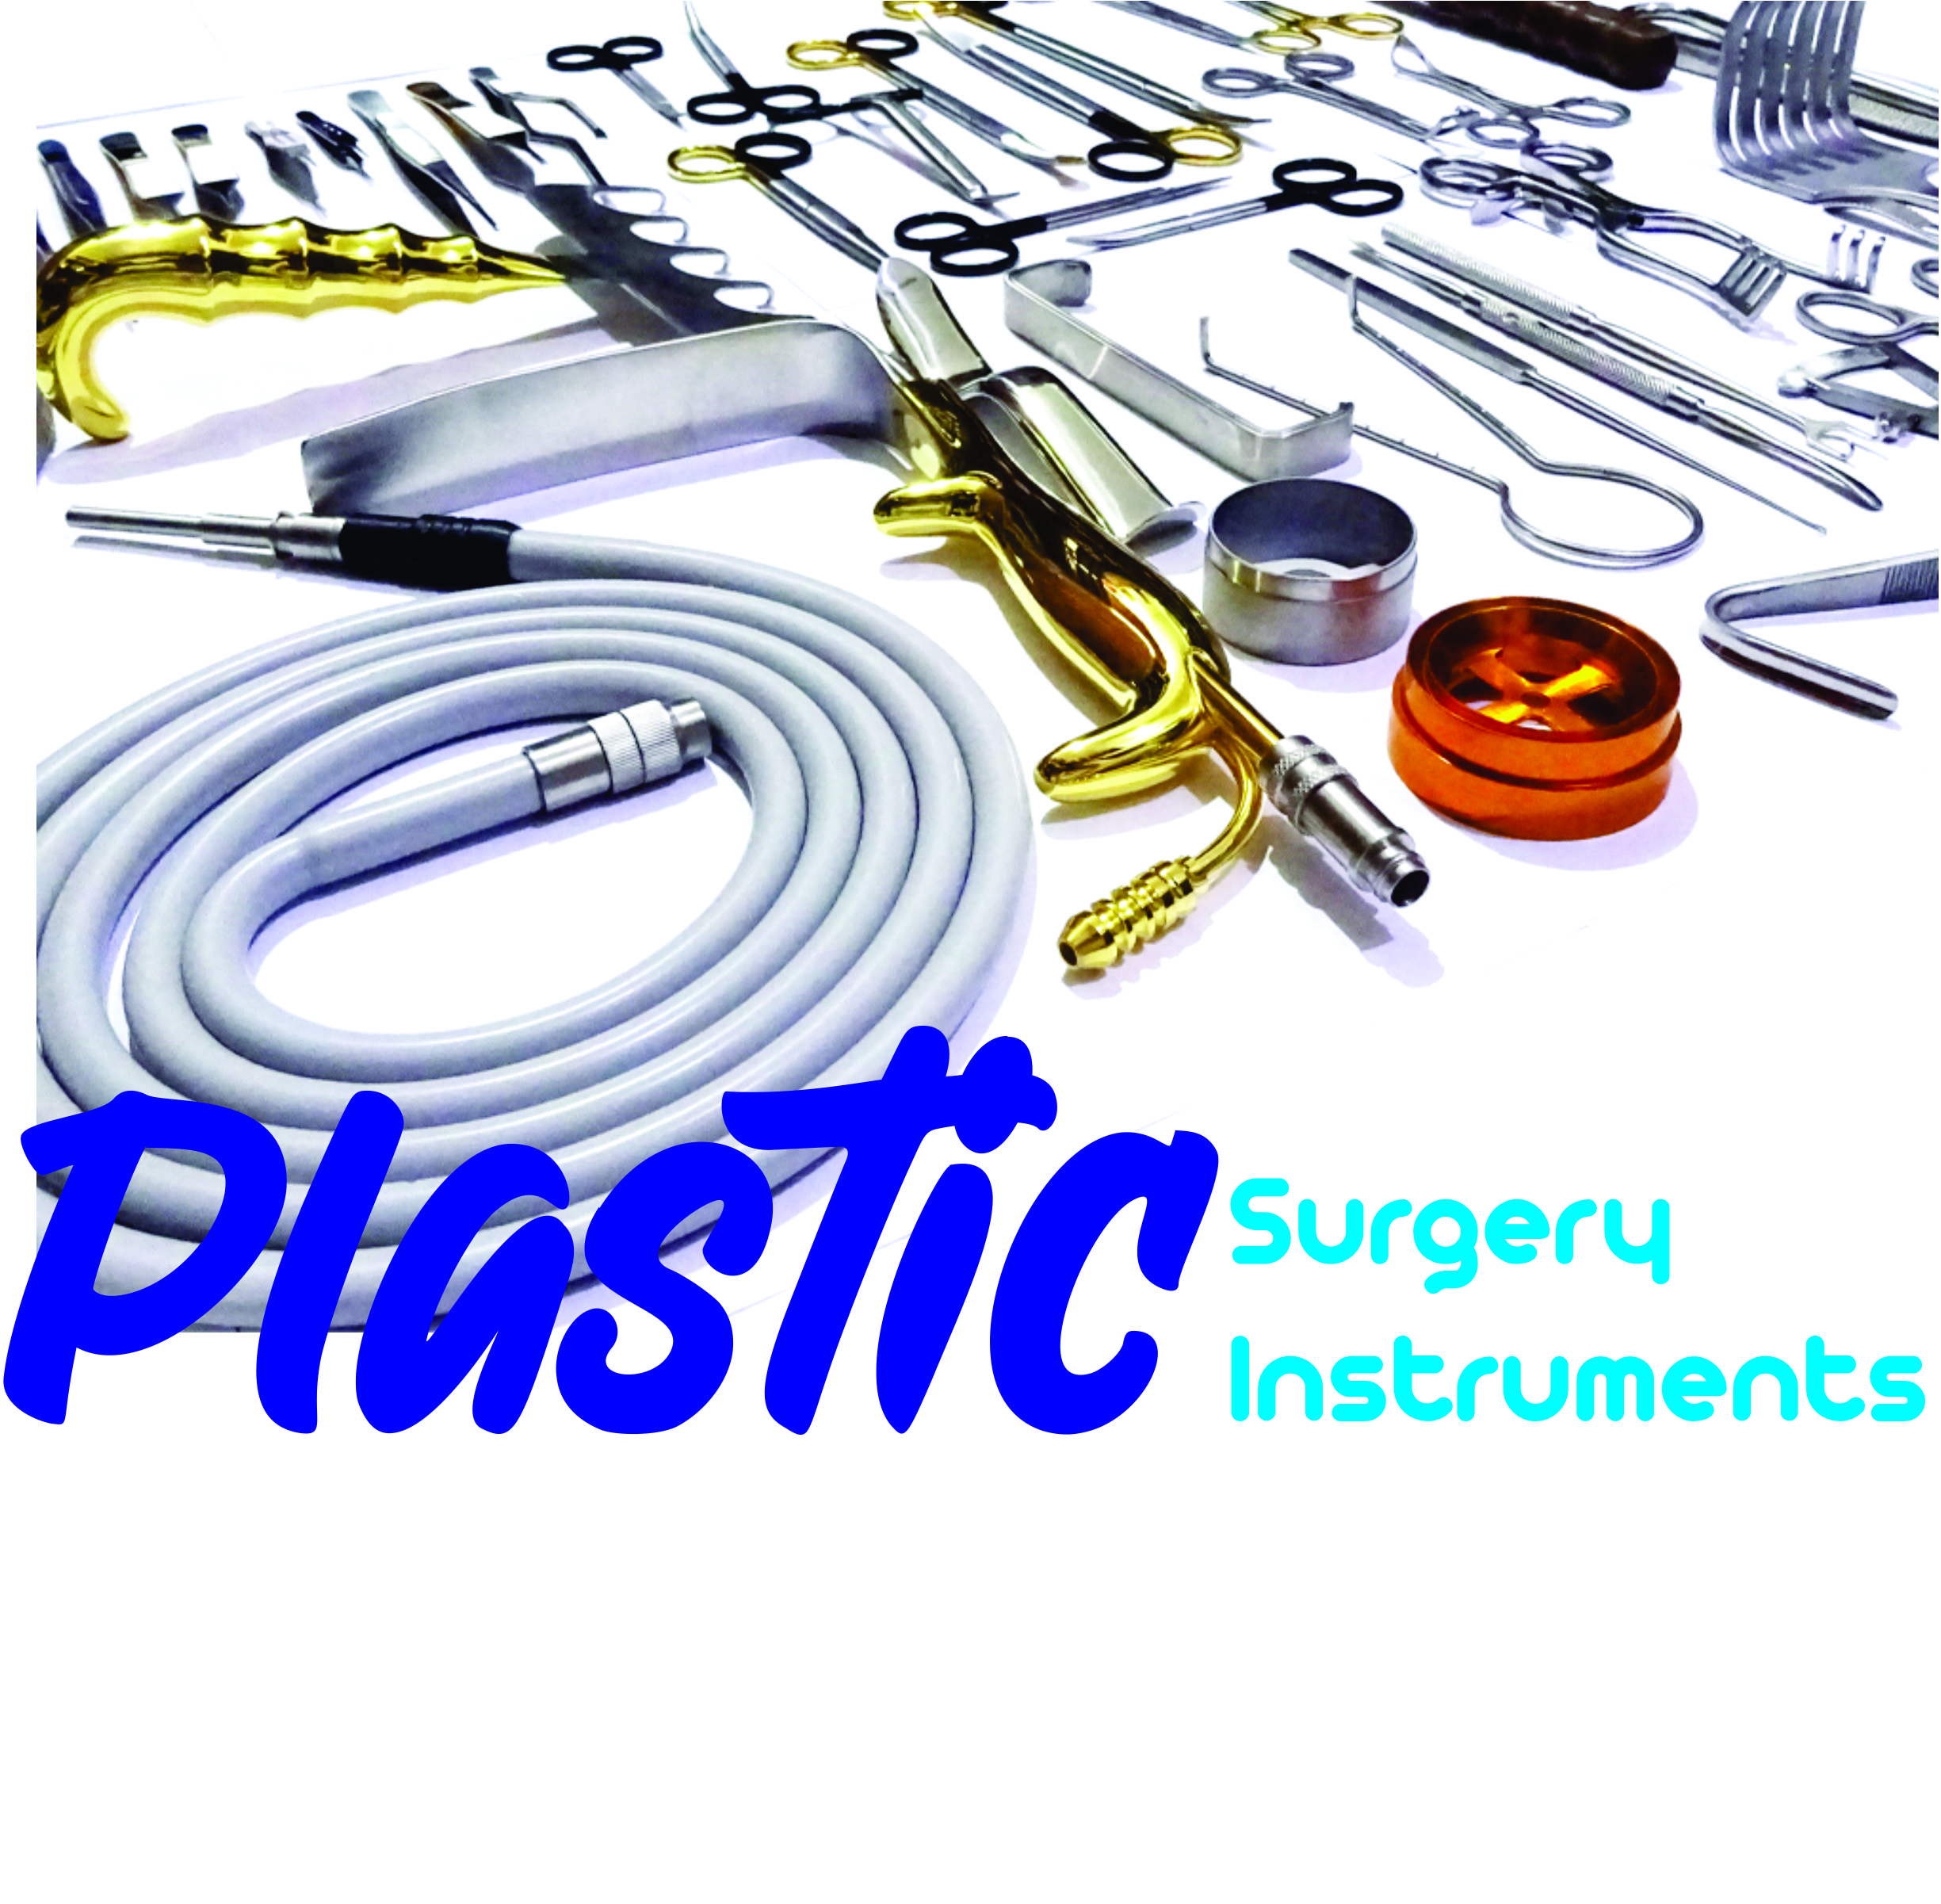 Plastic Surgery Instruments Manufacturer Supplier Pakistan